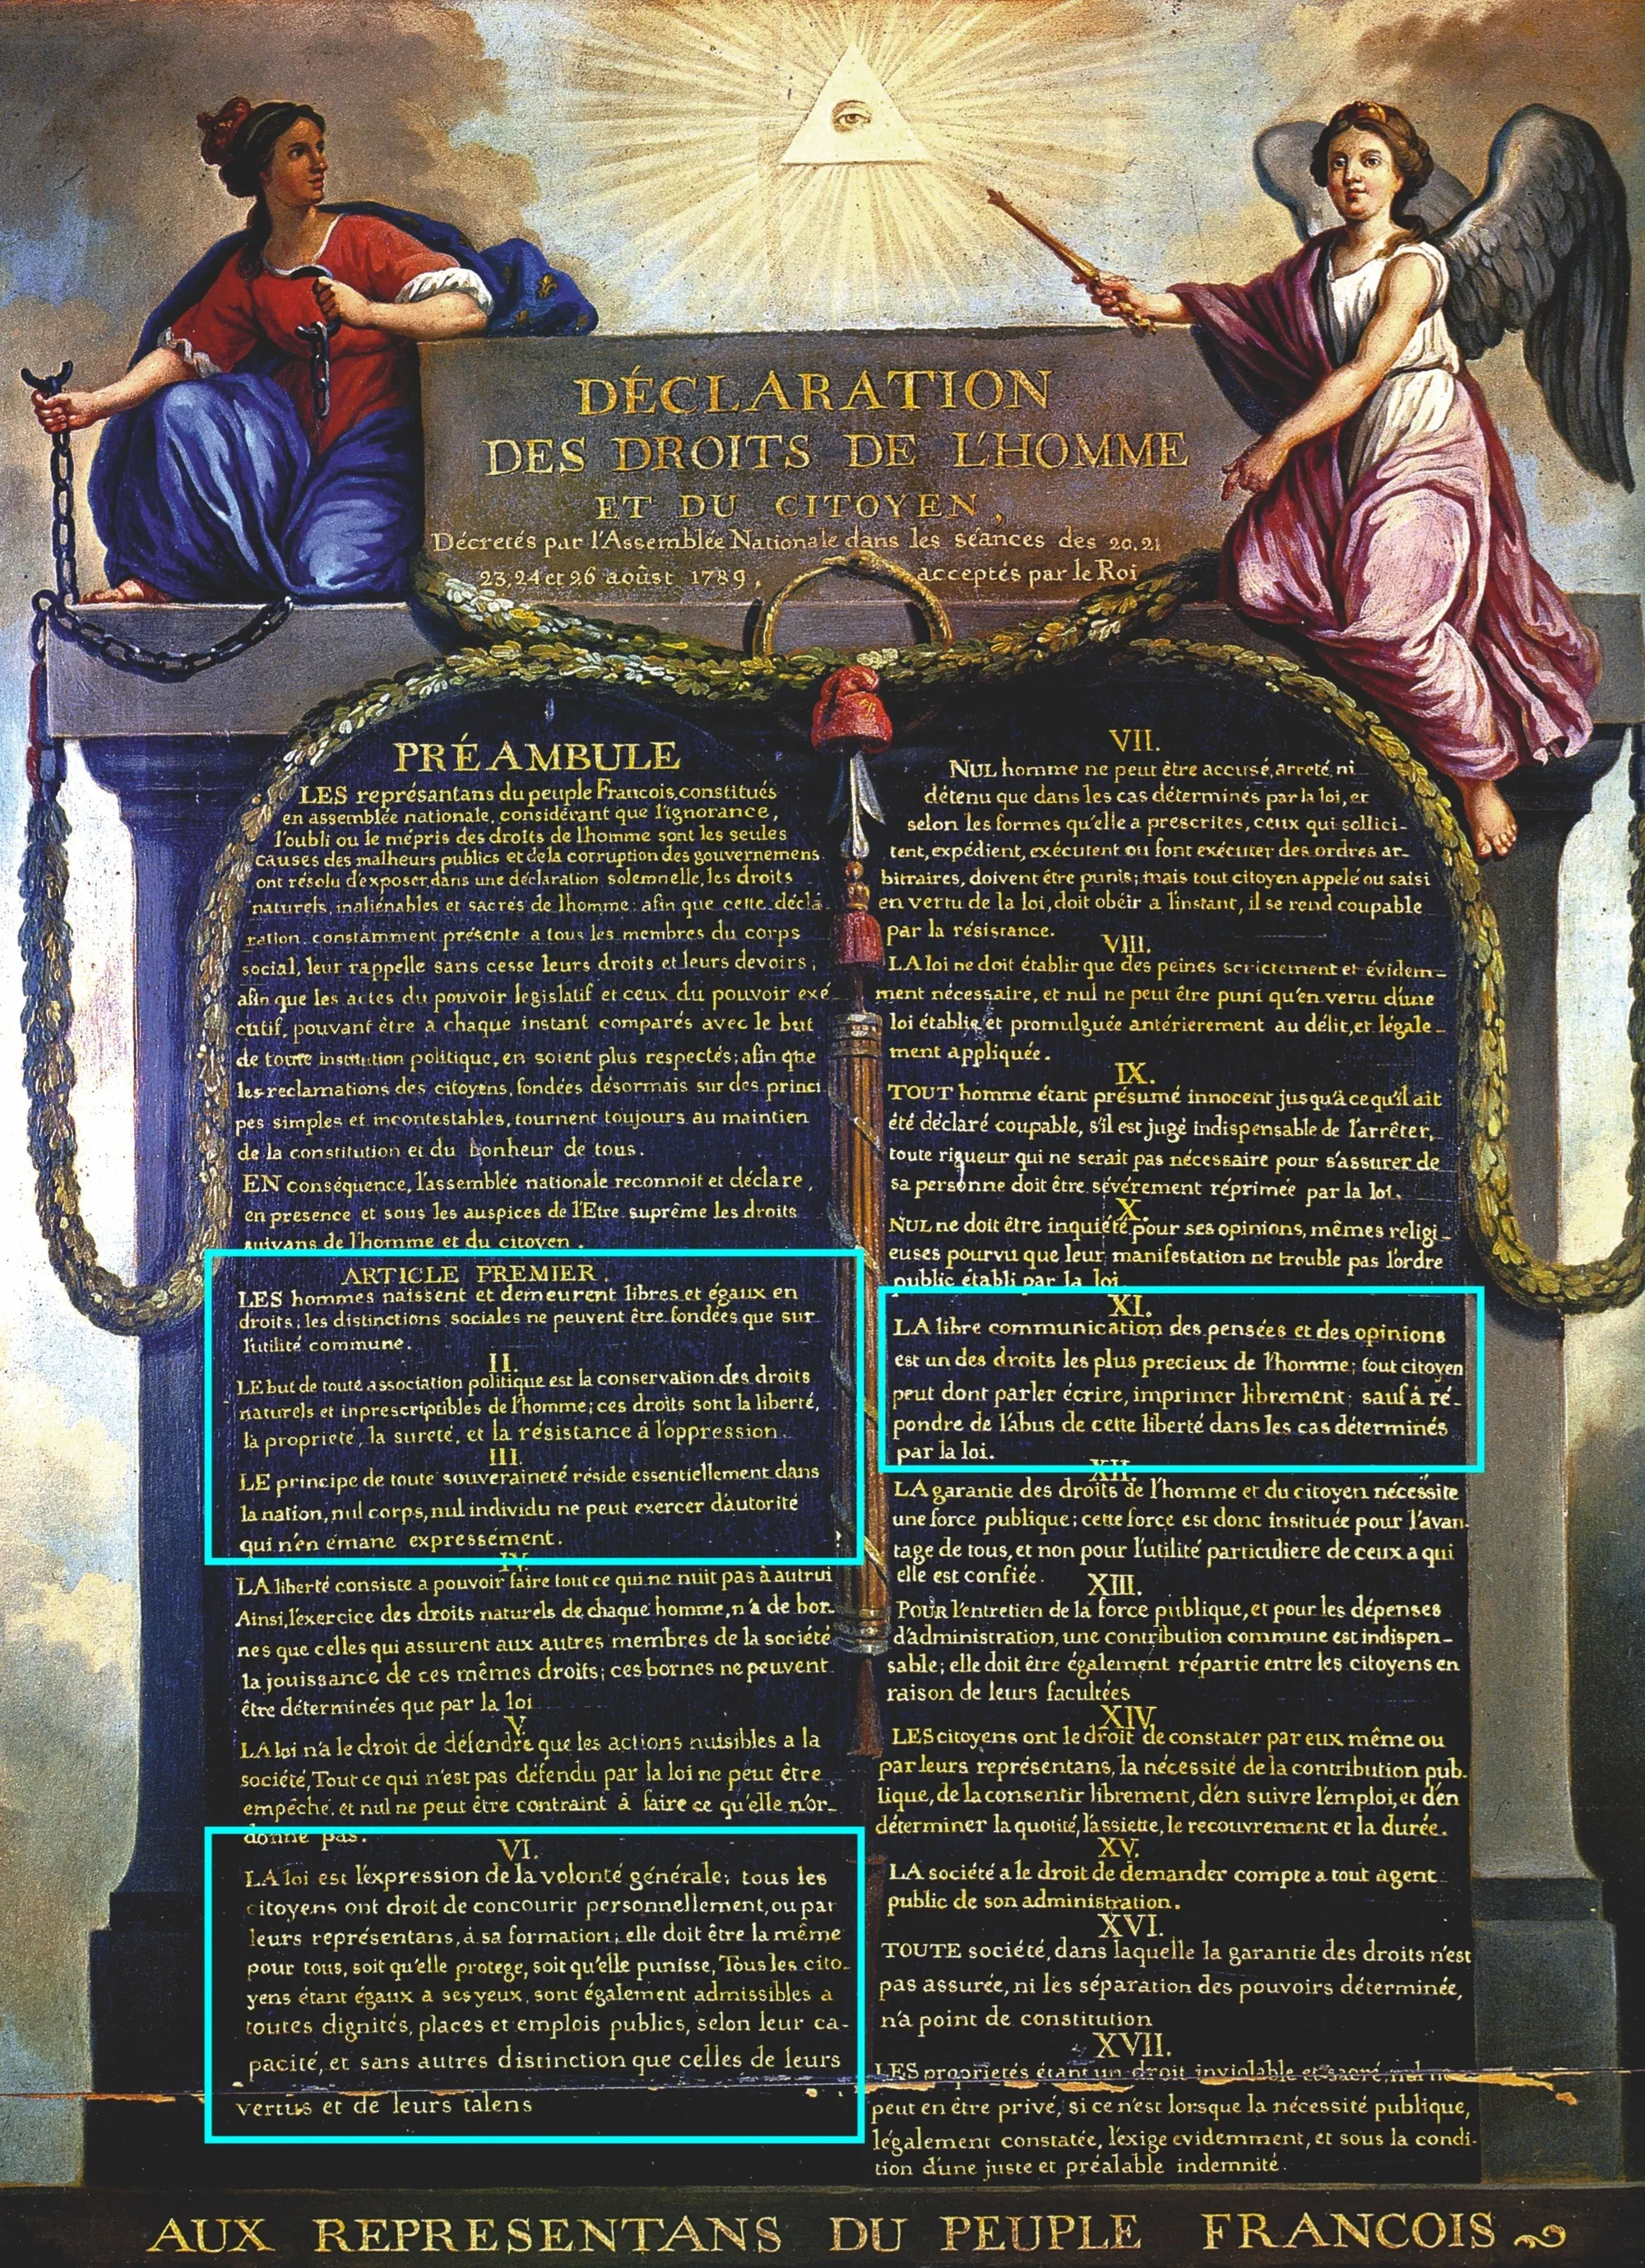 Représentation de la Déclaration des droits de l'homme et du citoyen de 1789